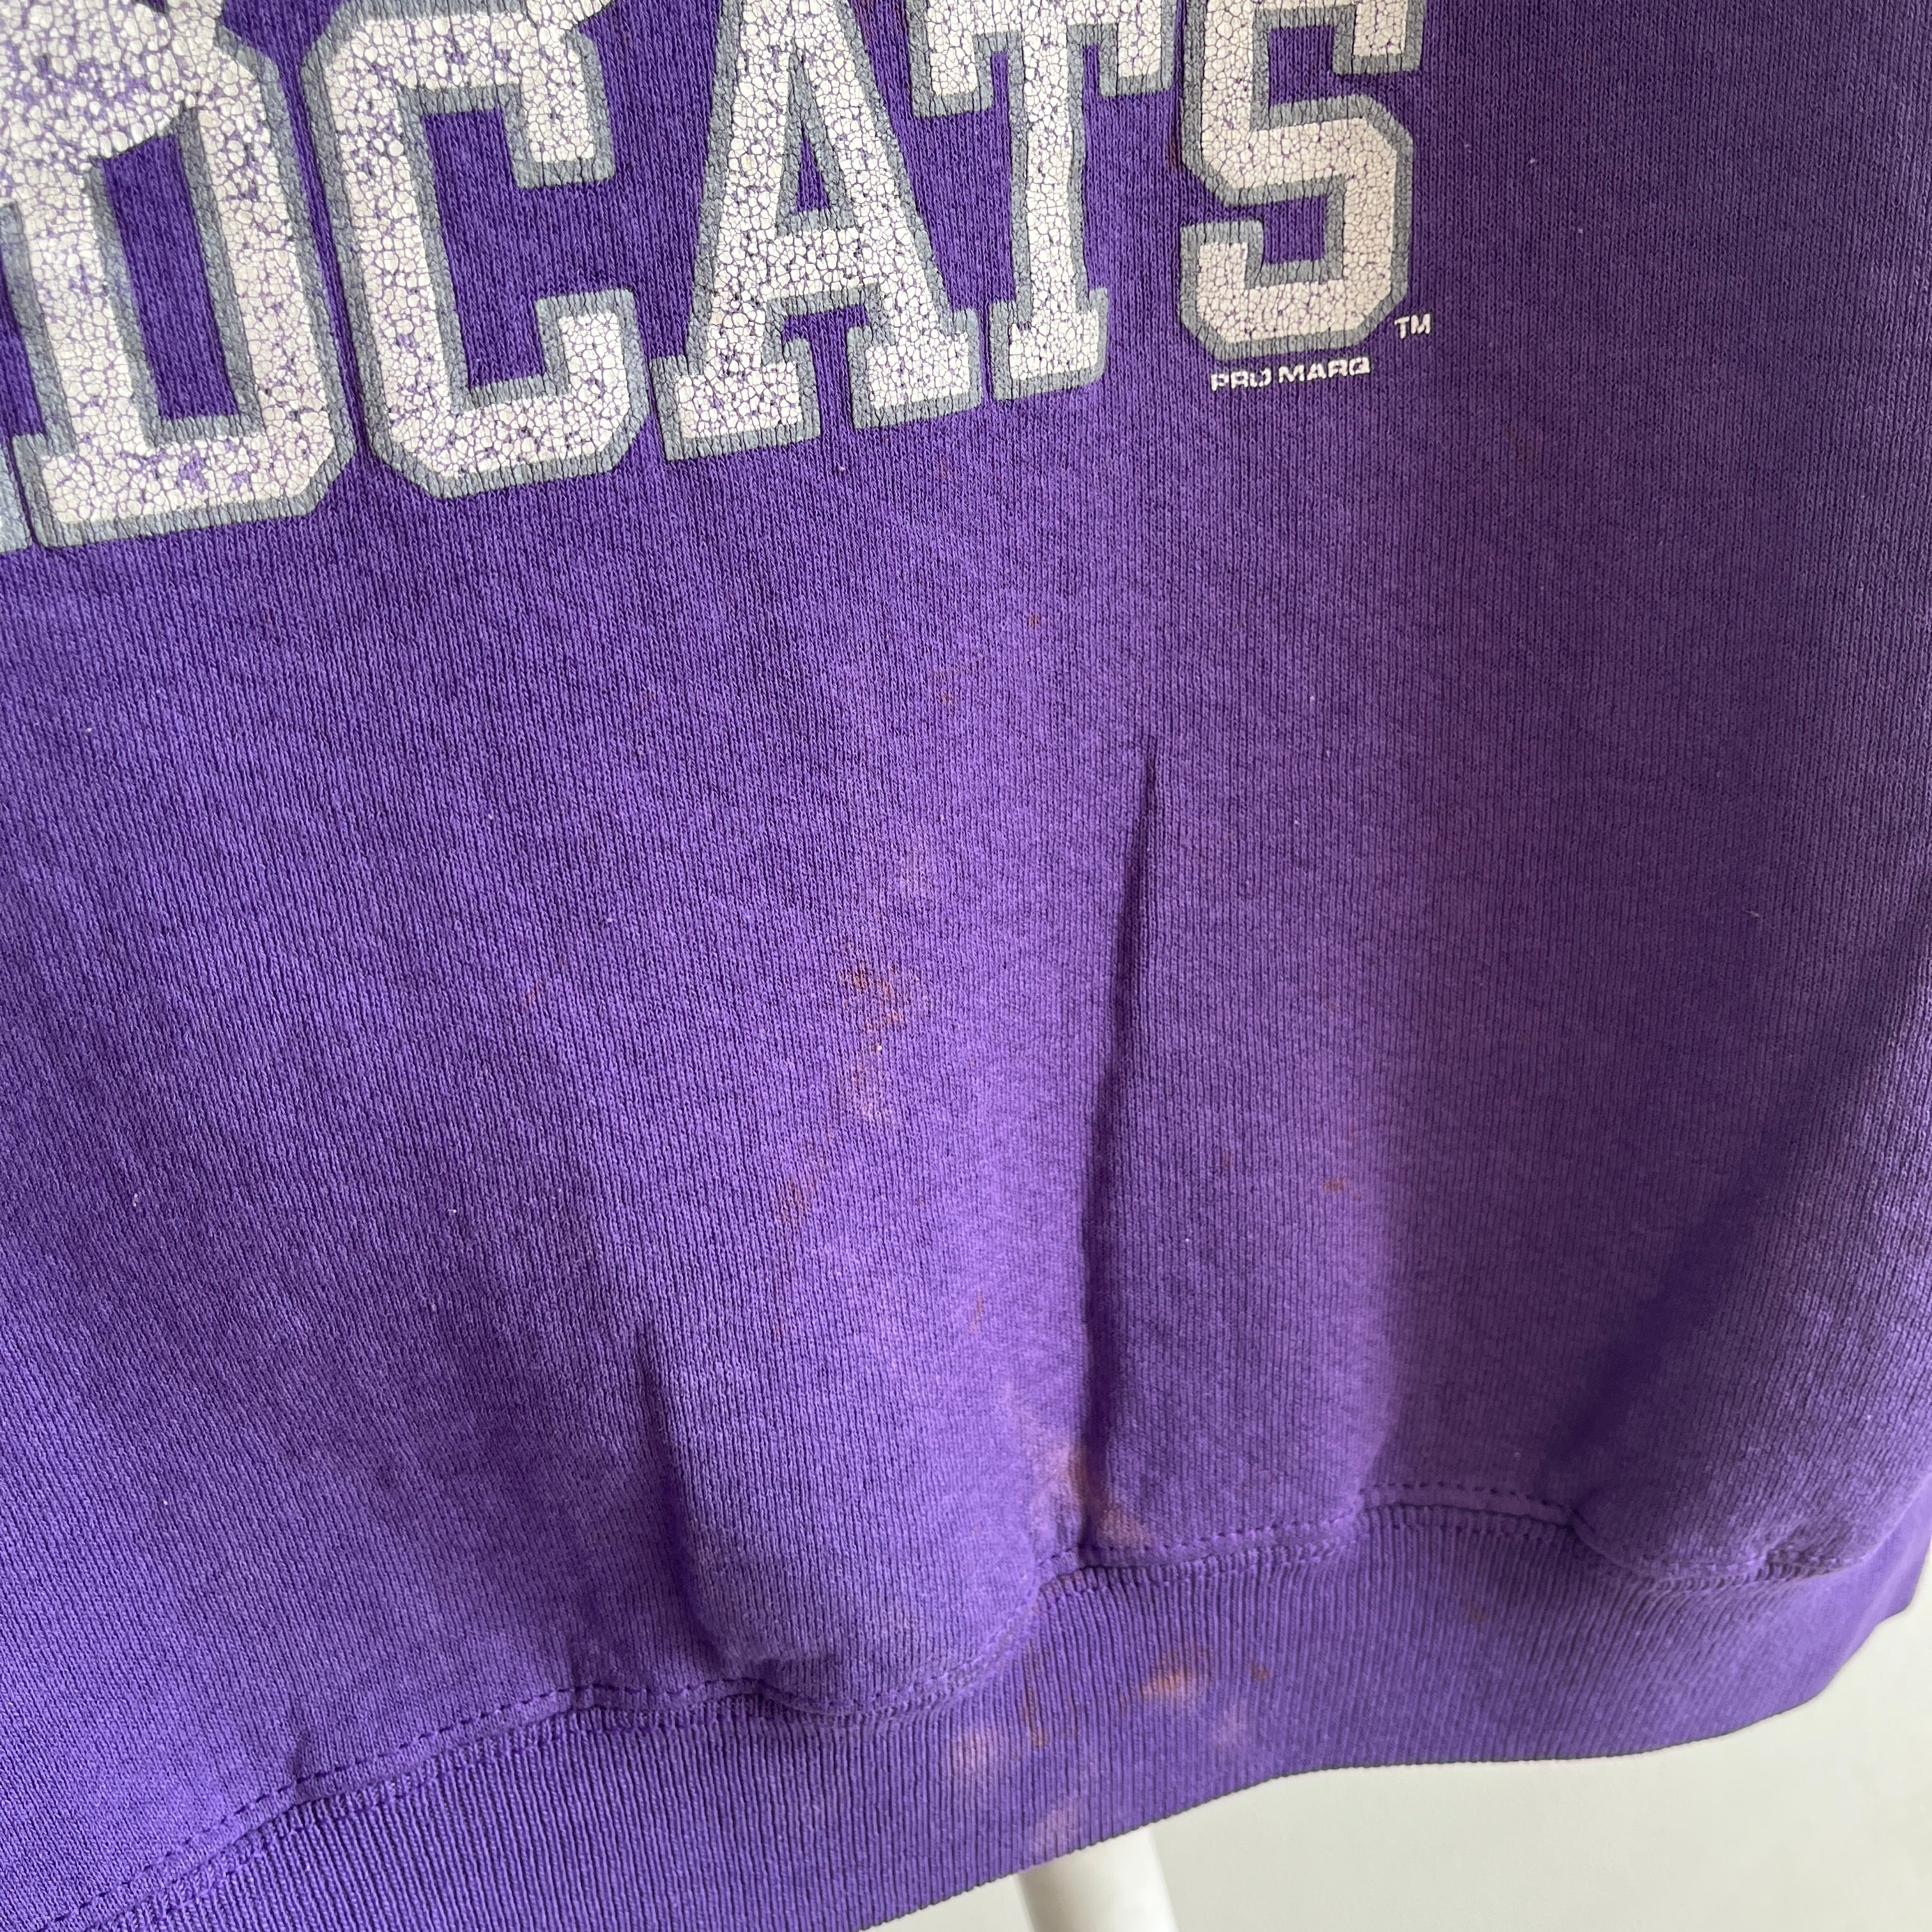 1990s Kansas State Wildcats Sweatshirt